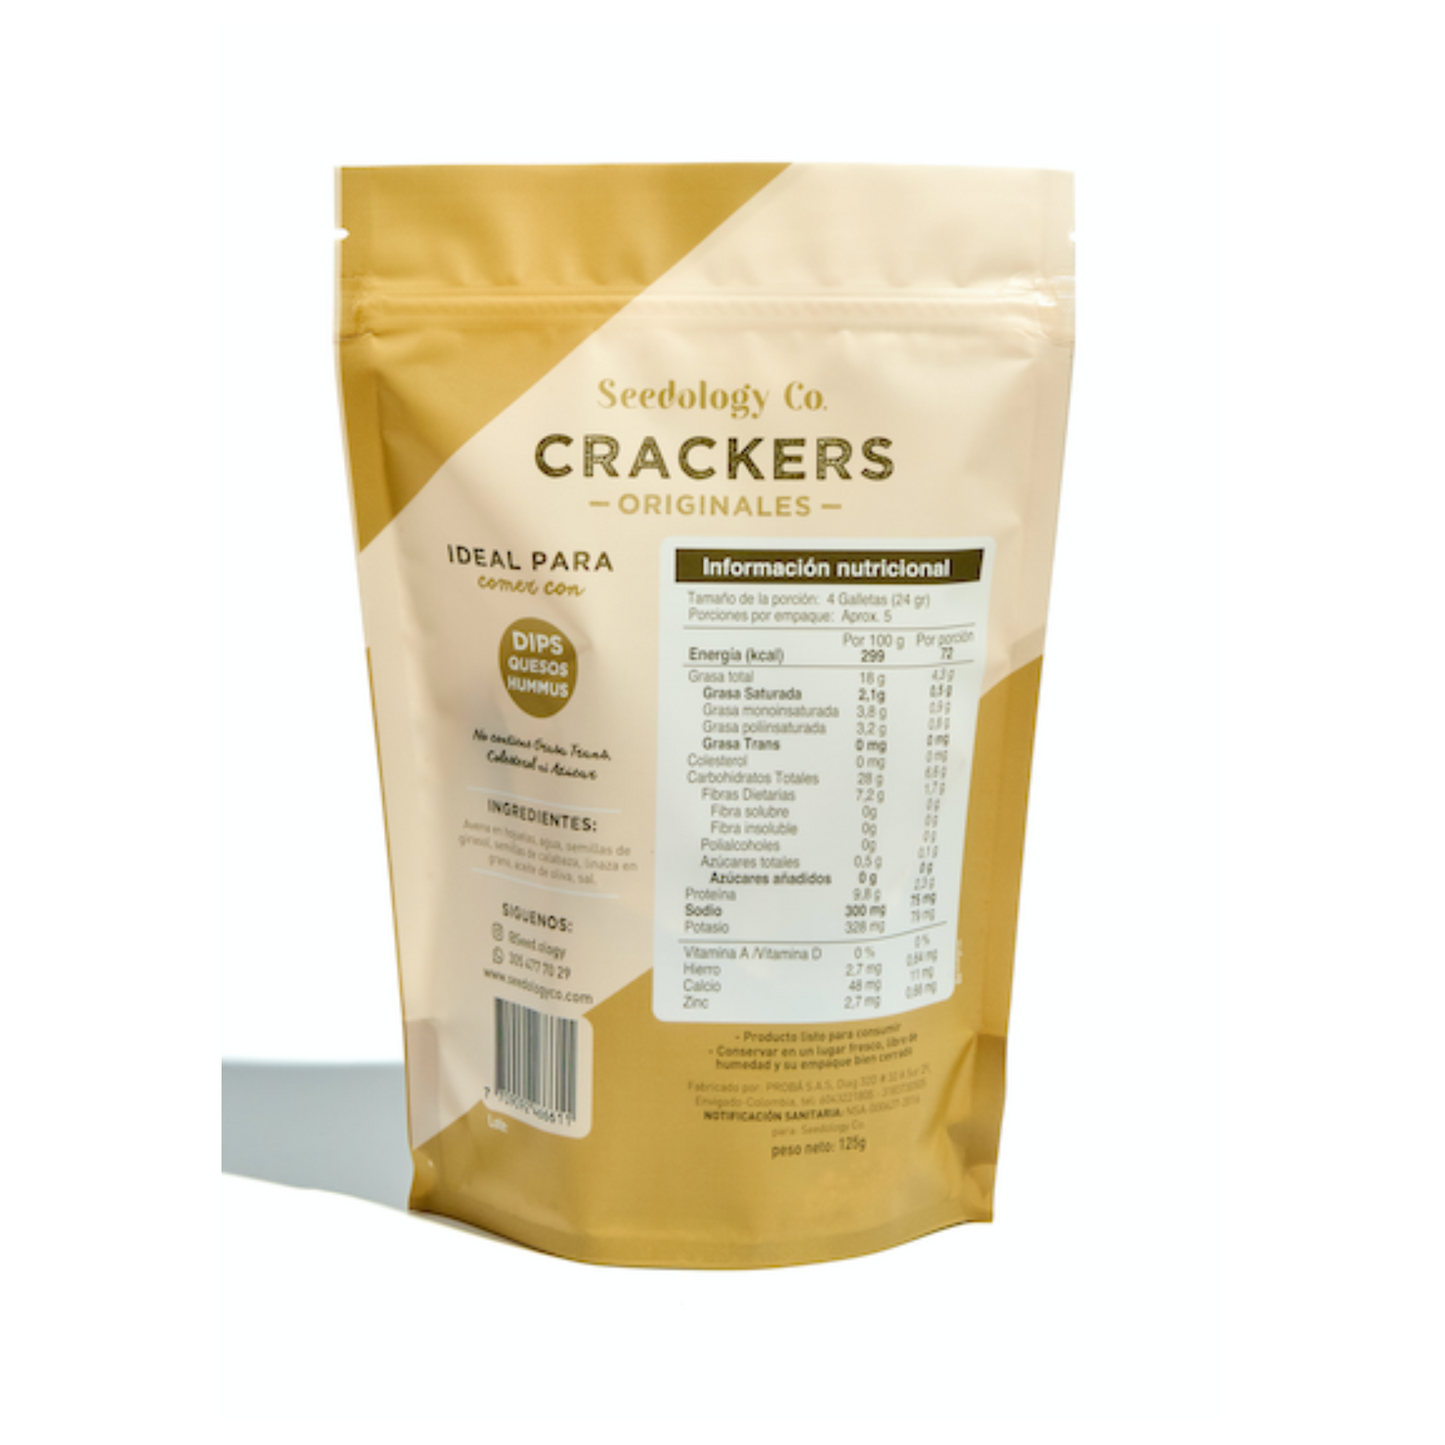 Crackers Originales